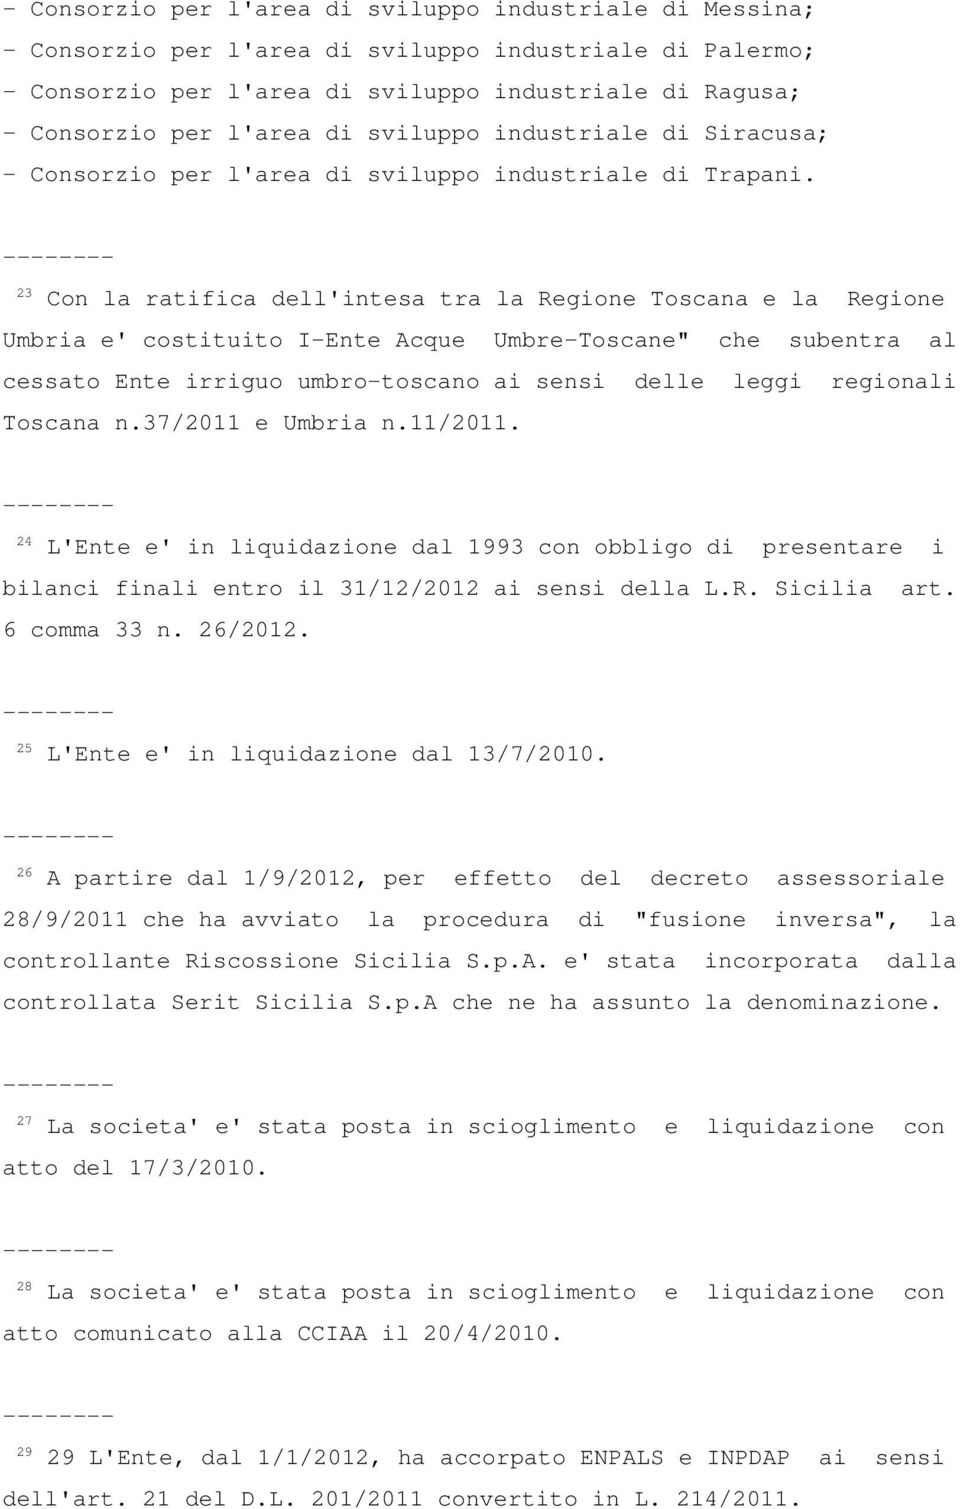 23 Con la ratifica dell'intesa tra la Regione Toscana e la Regione Umbria e' costituito I-Ente Acque Umbre-Toscane" che subentra al cessato Ente irriguo umbro-toscano ai sensi delle leggi regionali